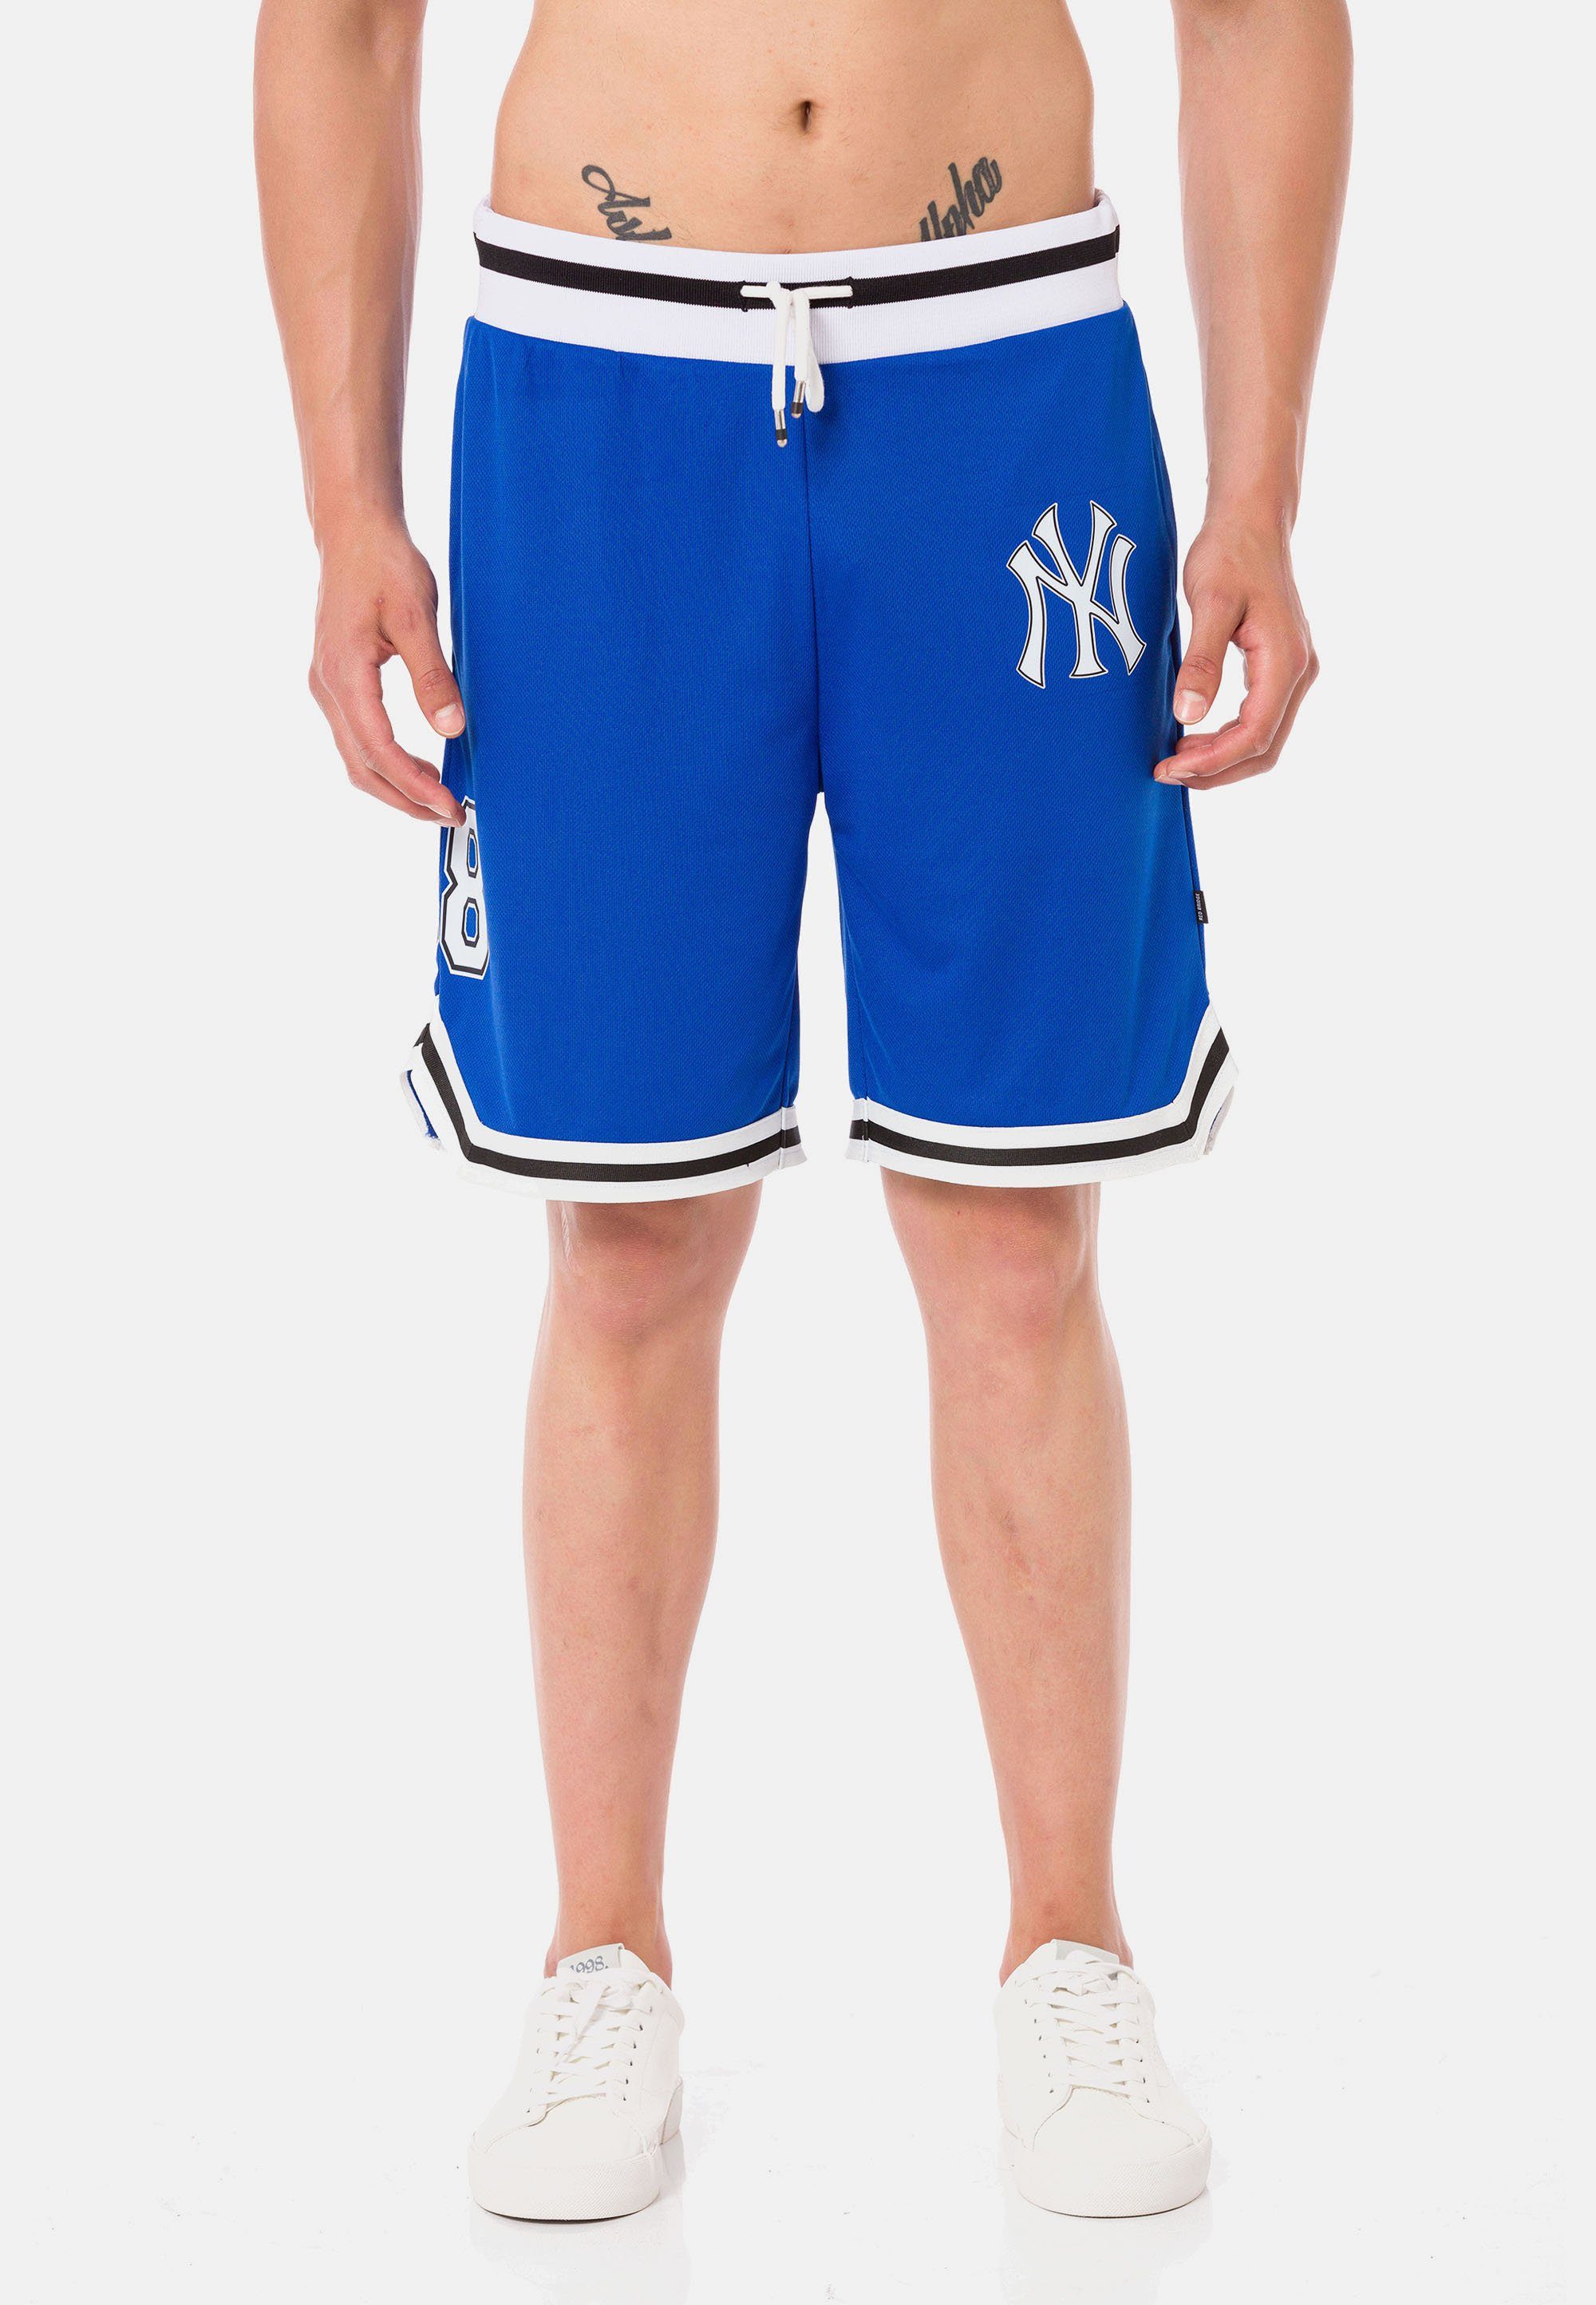 RedBridge Shorts Galeomaltande mit lässigen Kontraststreifen blau-weiß | Shorts